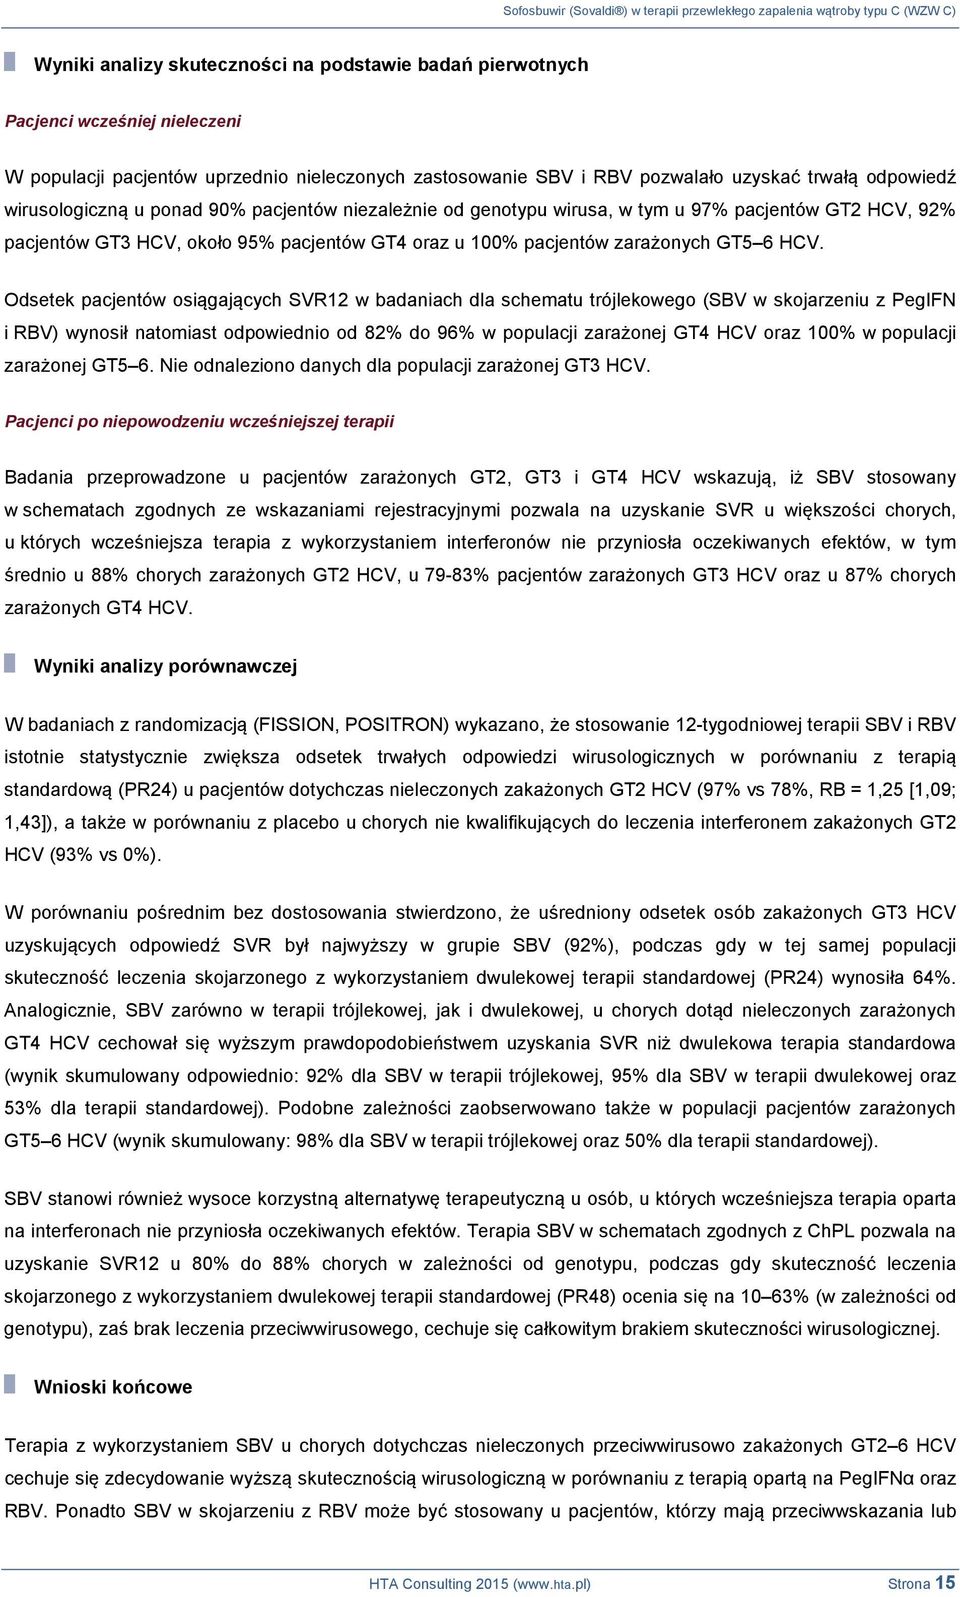 Odsetek pacjentów osiągających SVR12 w badaniach dla schematu trójlekowego (SBV w skojarzeniu z PegIFN i RBV) wynosił natomiast odpowiednio od 82% do 96% w populacji zarażonej GT4 HCV oraz 100% w